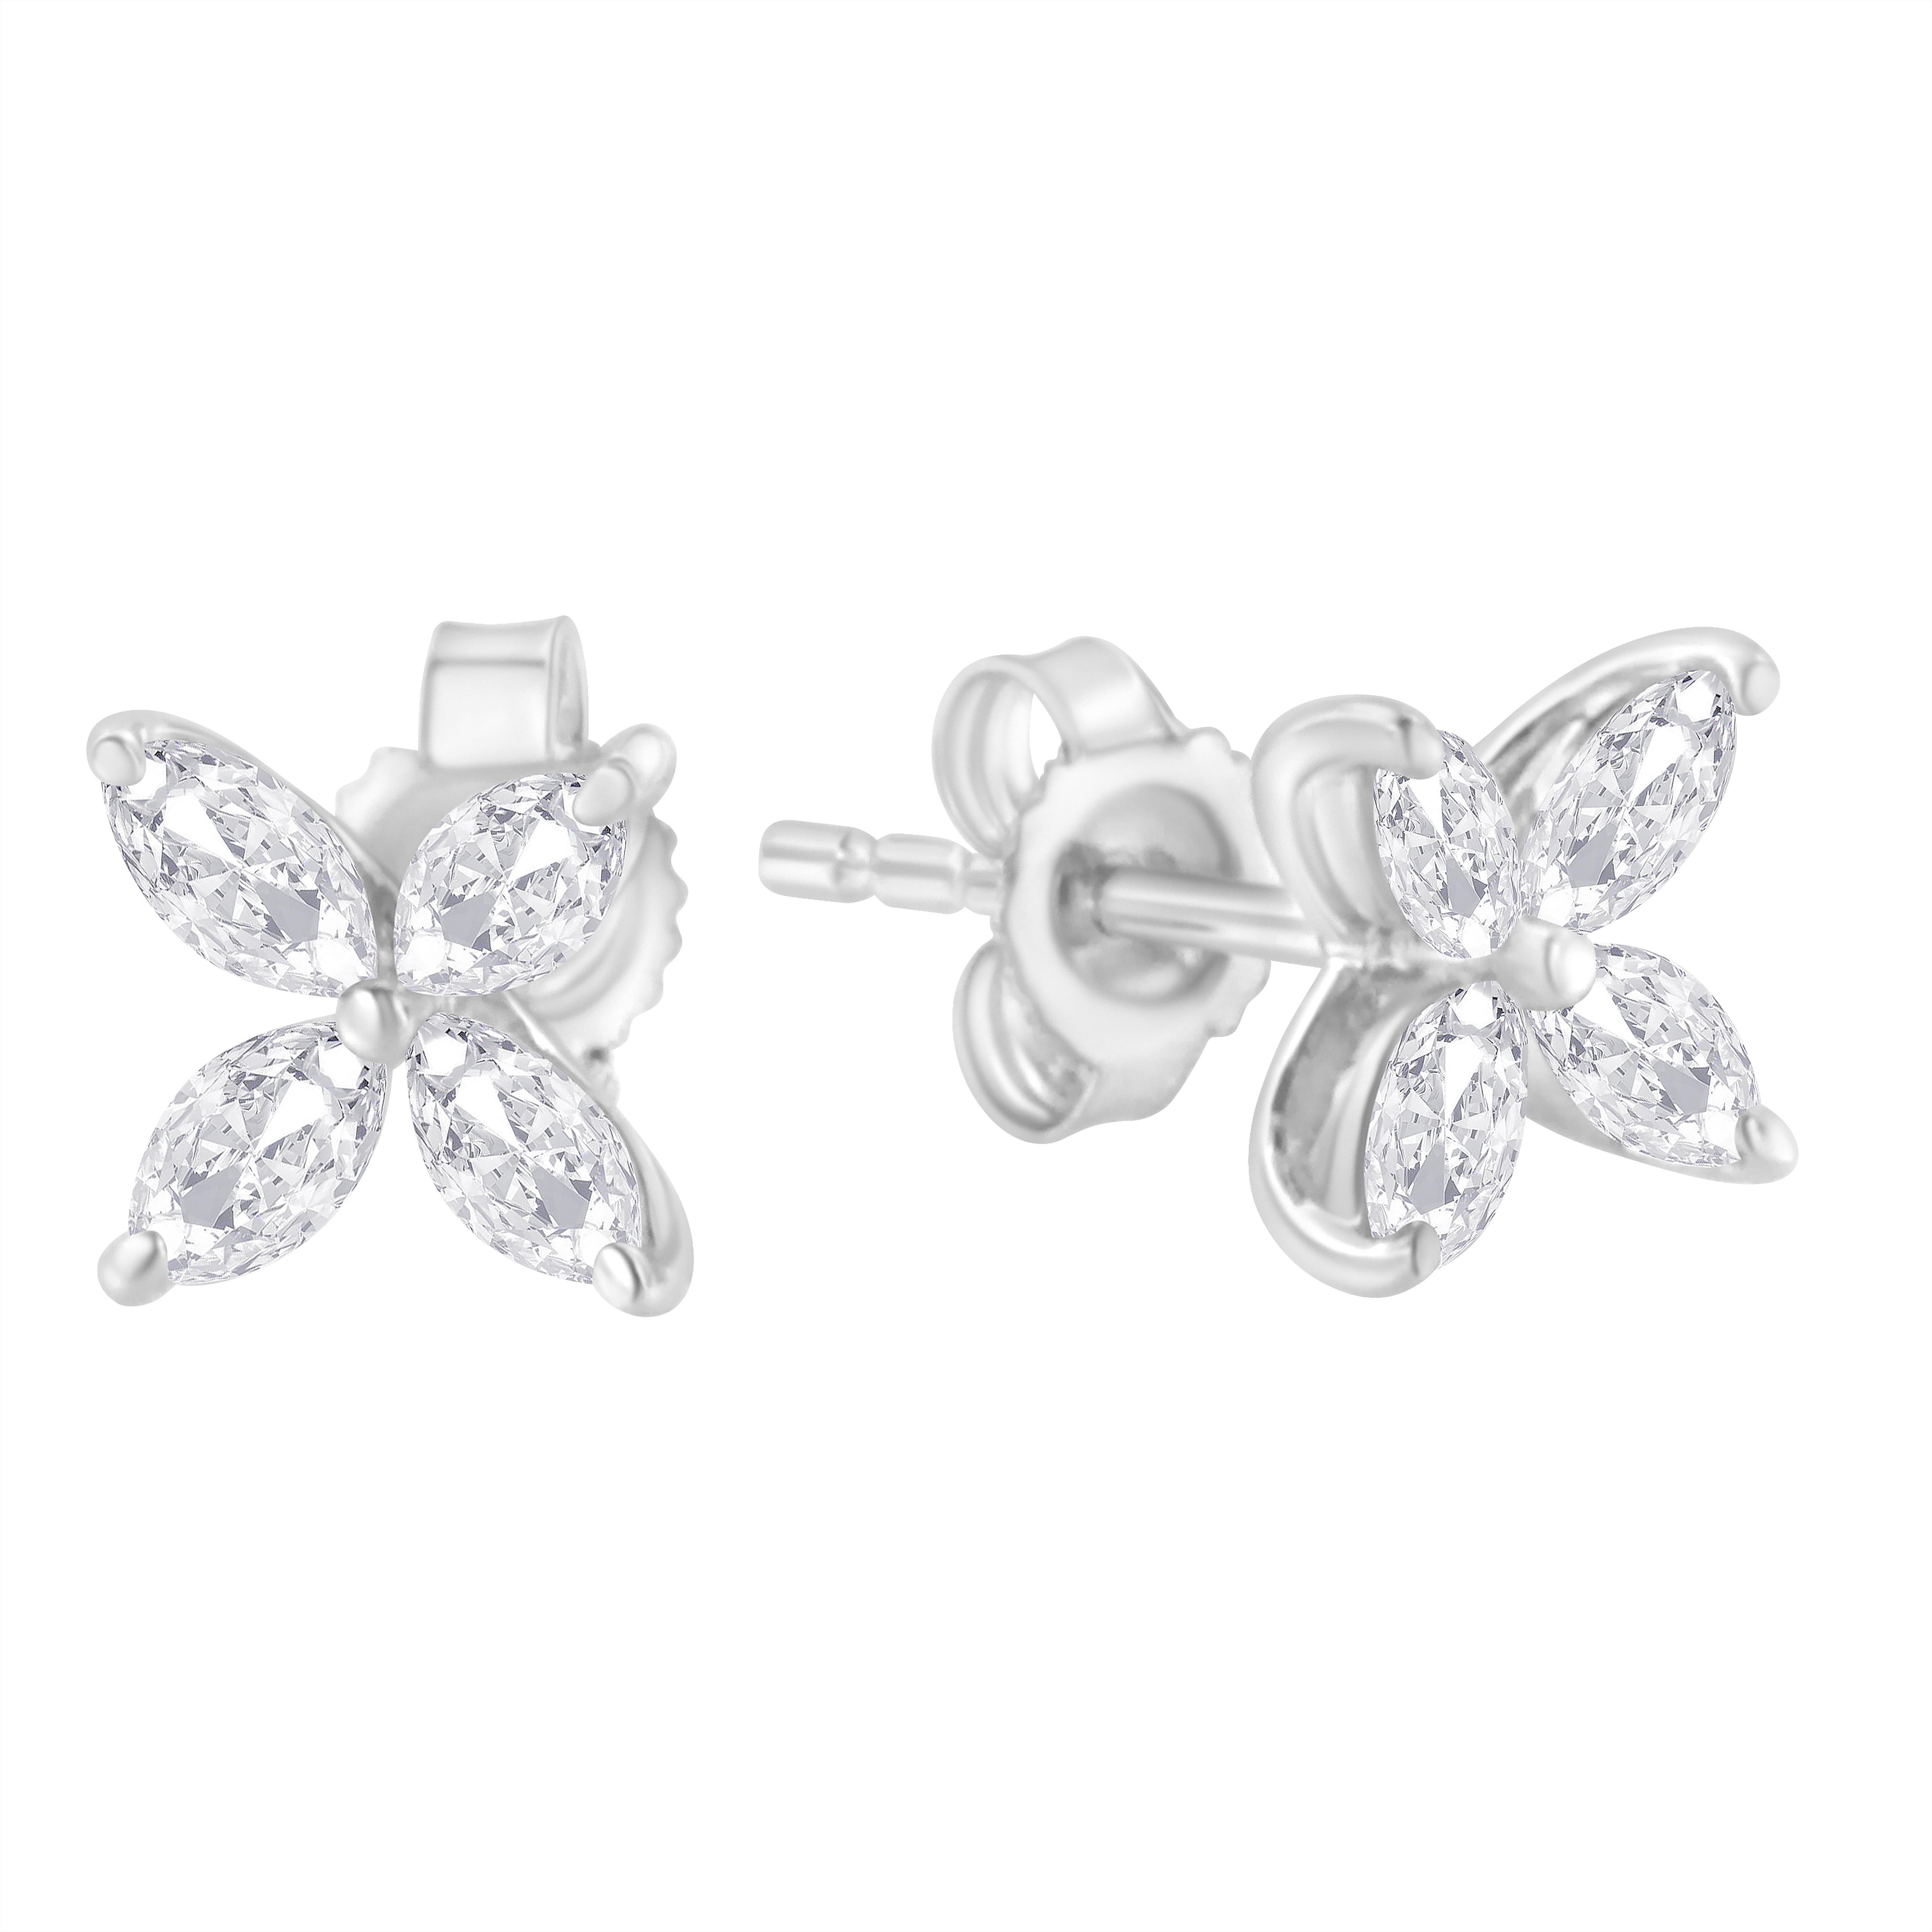 Ein Paar florale Diamantohrringe mit jeweils 8 marquiseförmigen Diamanten, die wie eine Blume angeordnet sind. Diese zarten Ohrringe sind aus 14 Karat Weißgold gefertigt und haben ein Gesamtgewicht von 3/4 Karat. Die Farbe dieser natürlichen